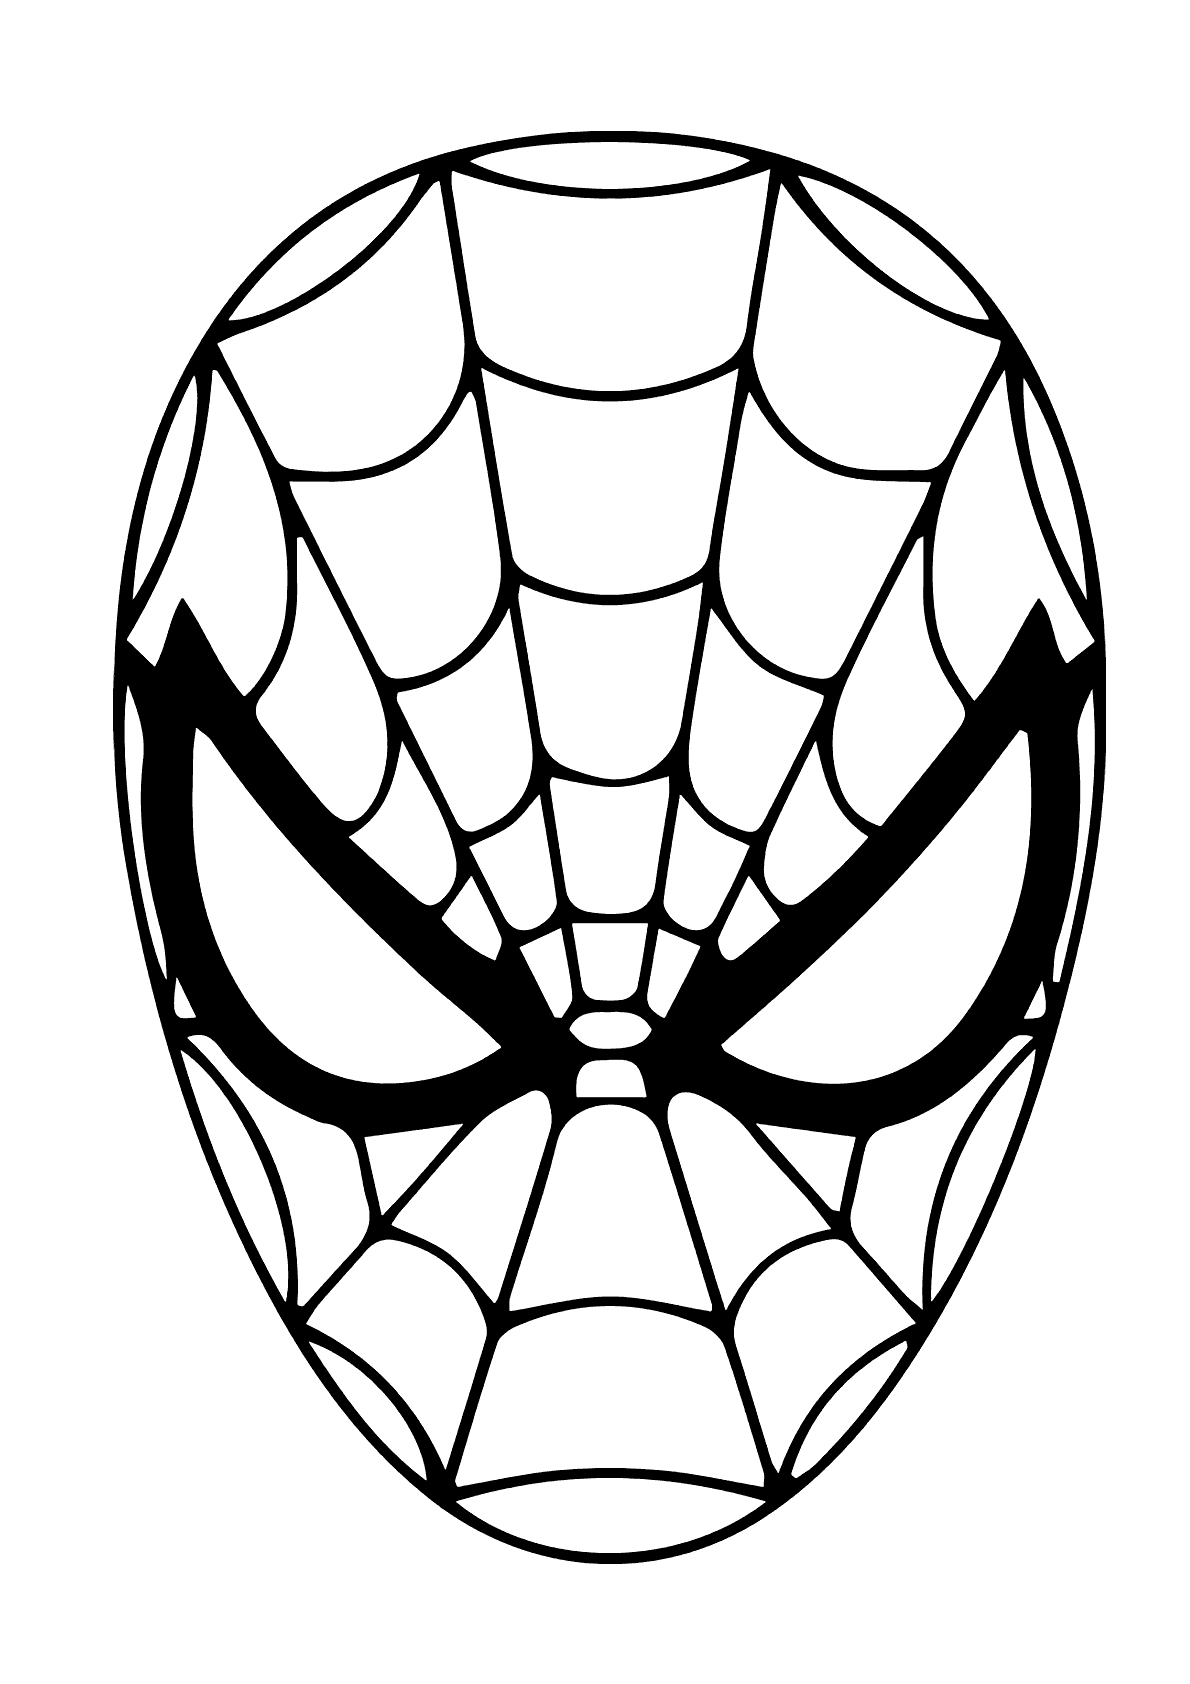 Máscara do Homem Aranha para Colorir - Desenho para Colorir